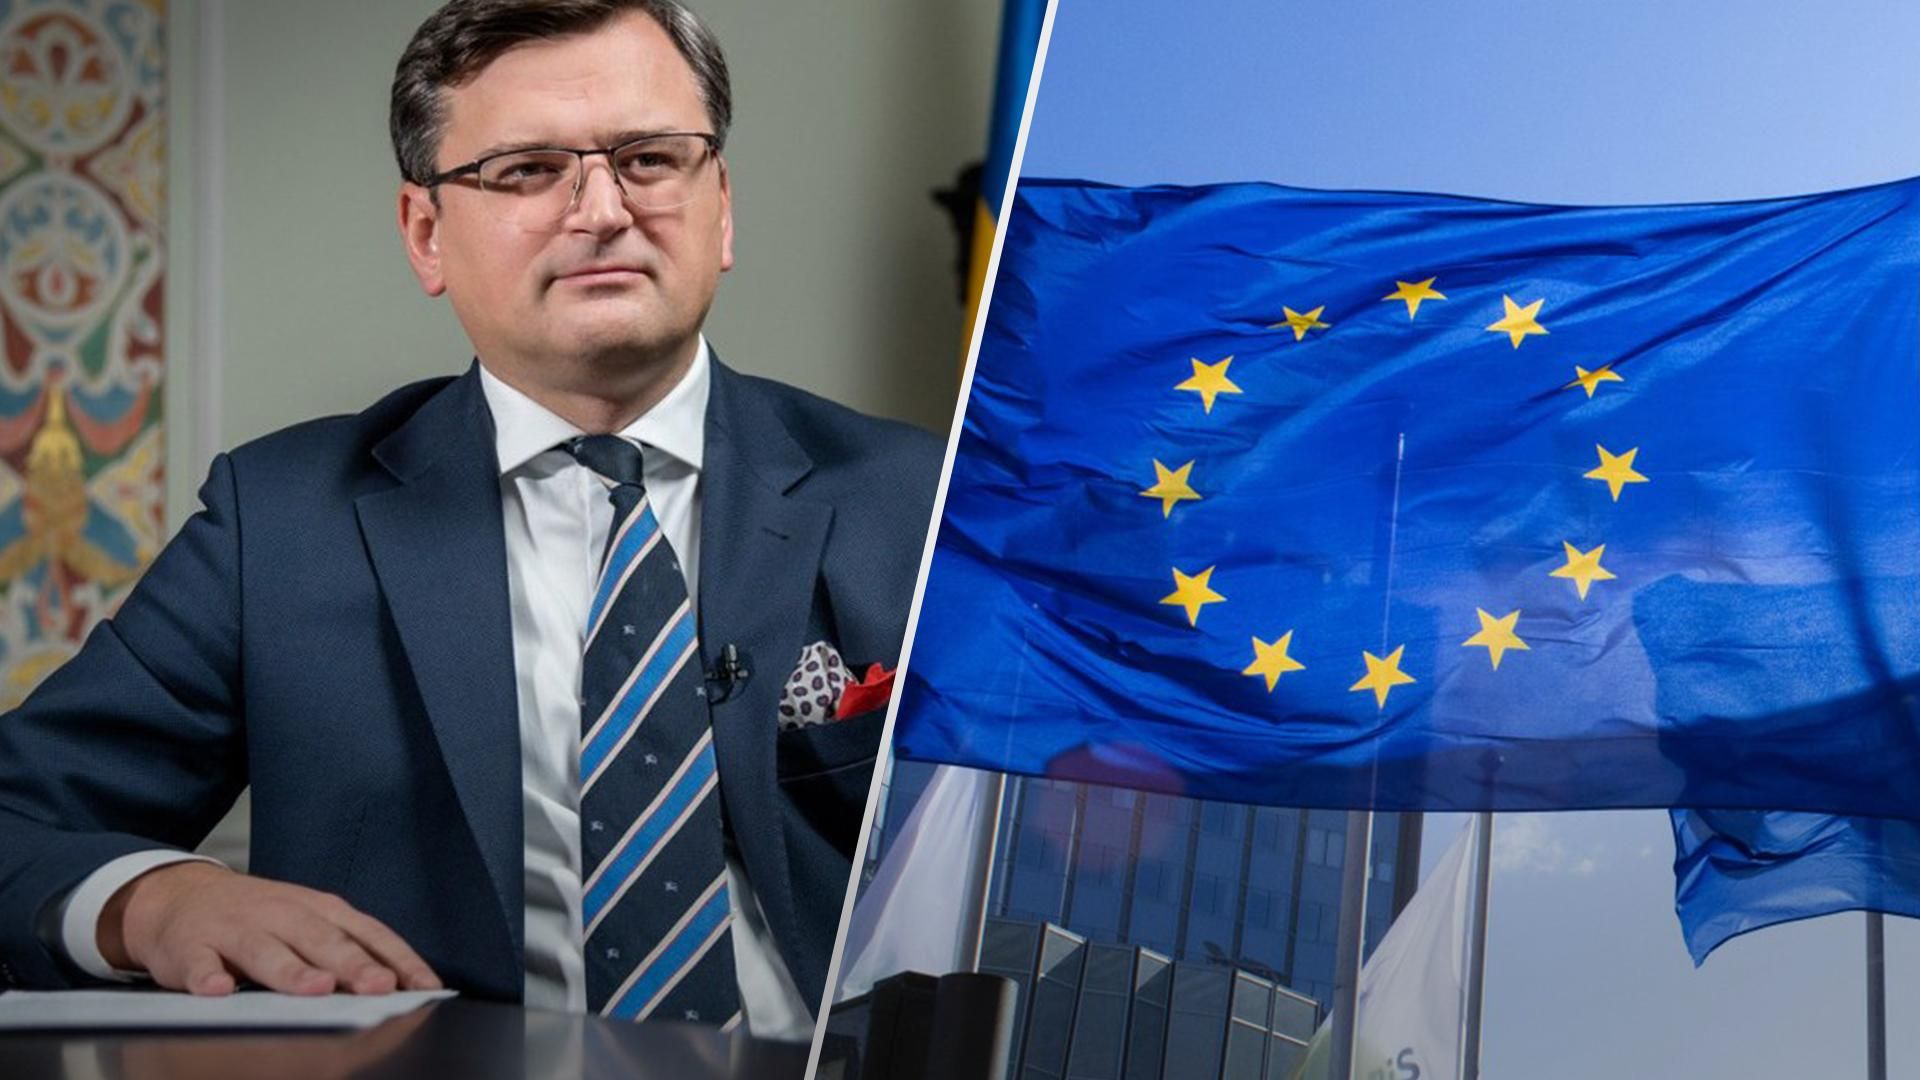 Нам не потрібне другосортне ставлення, – Кулеба про сурогати члена ЄС, які пропонують Україні